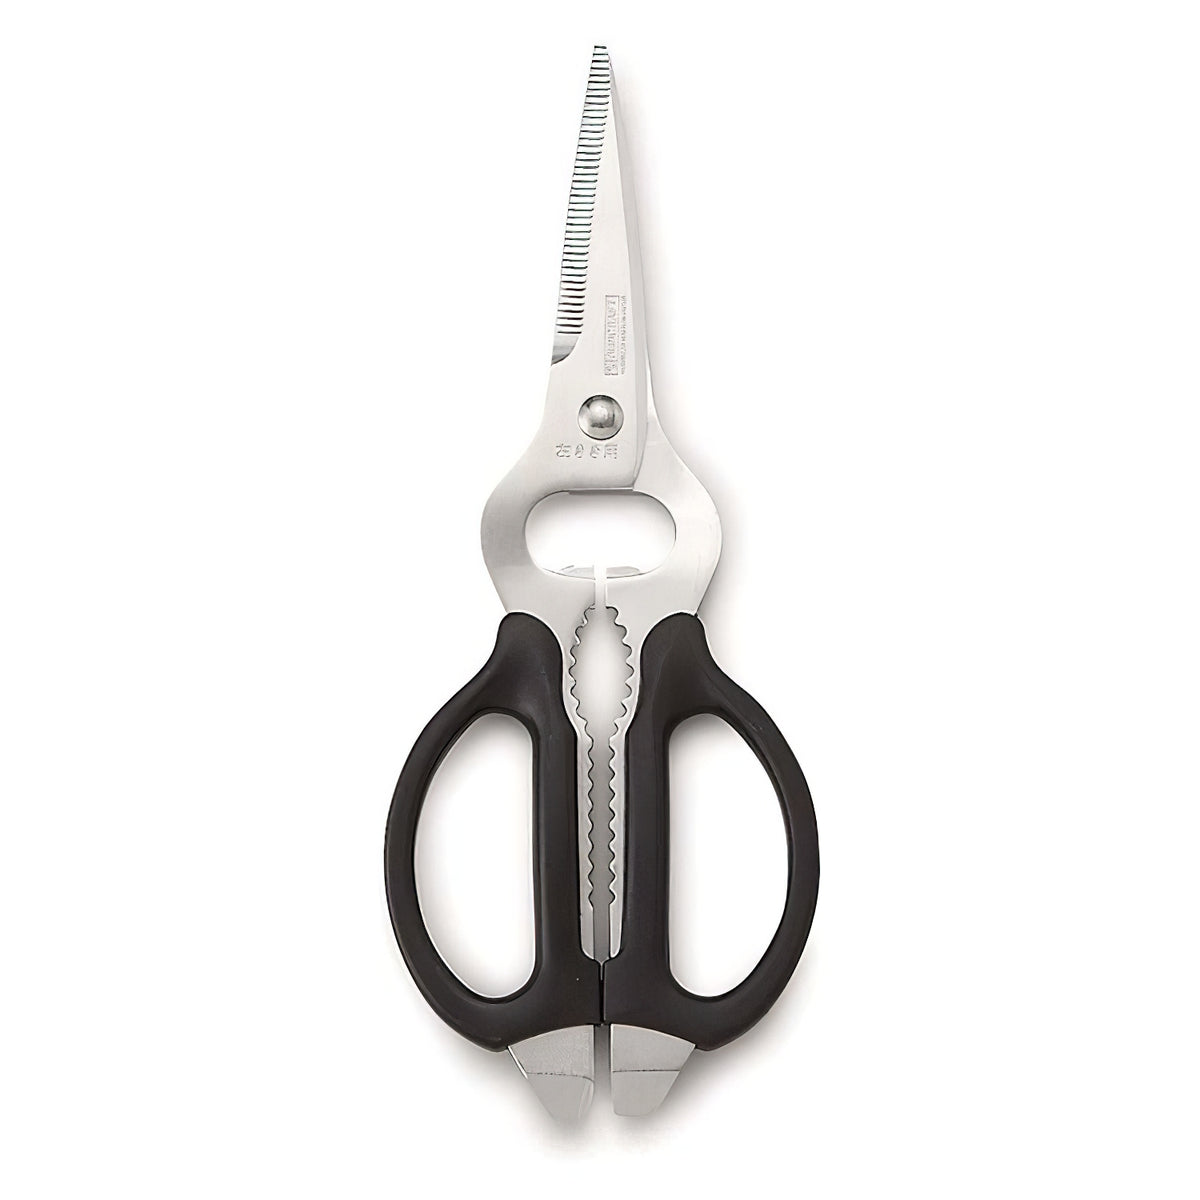 SUNCRAFT kitchen scissors, left-handed